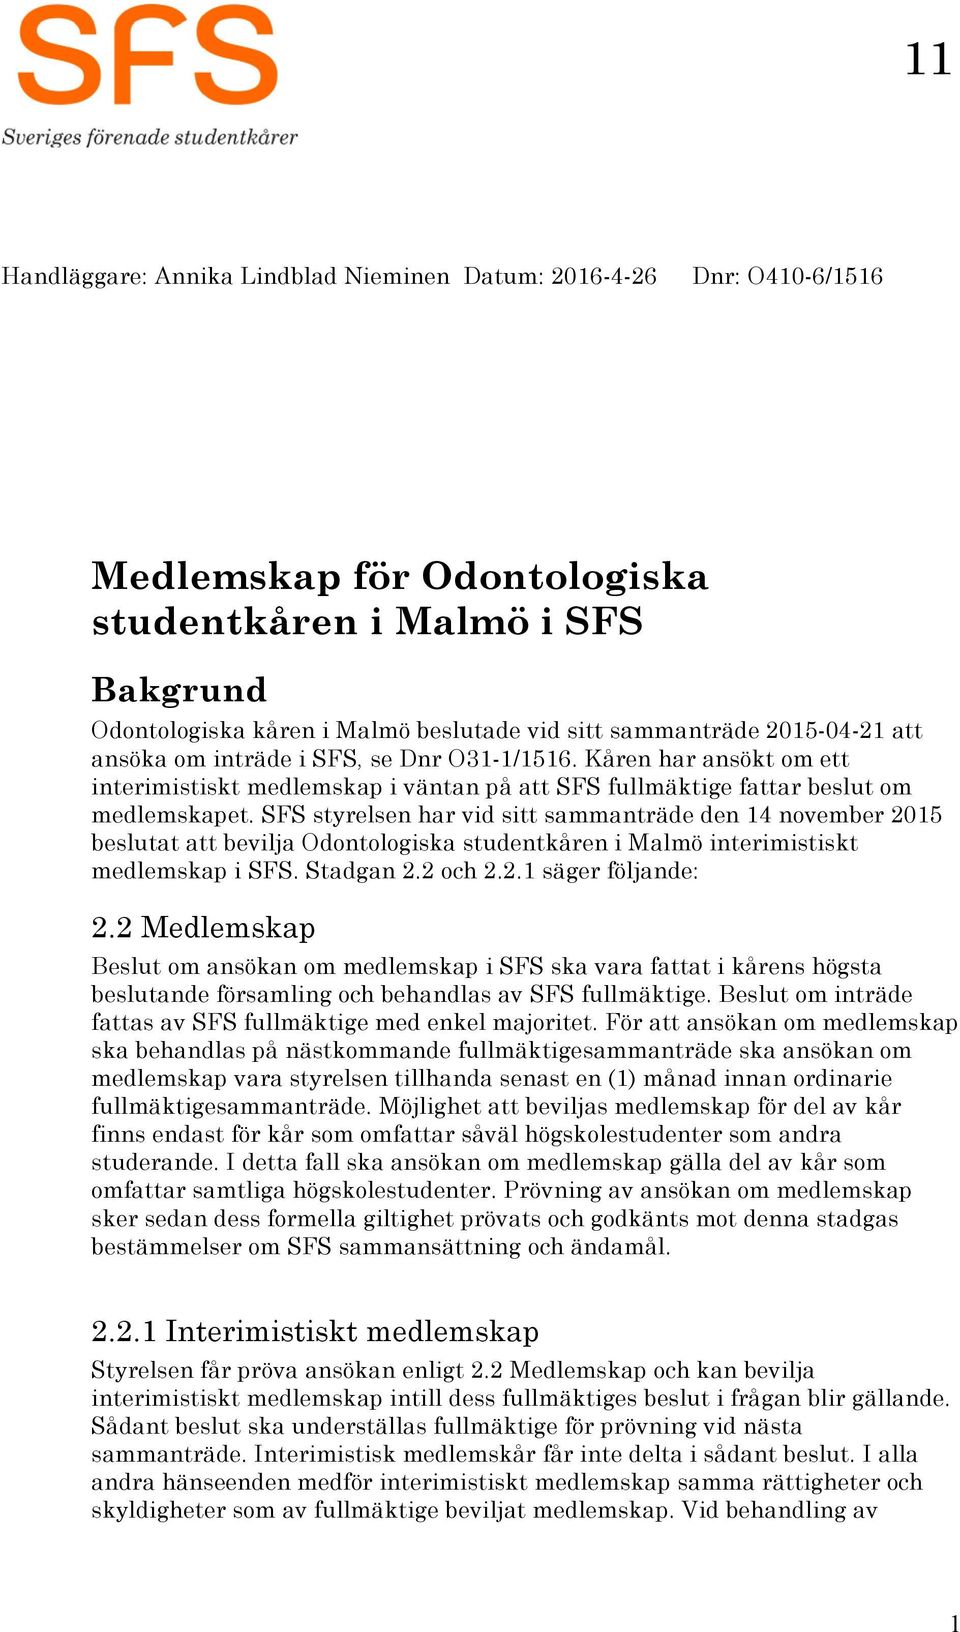 SFS styrelsen har vid sitt sammanträde den 14 november 2015 beslutat att bevilja Odontologiska studentkåren i Malmö interimistiskt medlemskap i SFS. Stadgan 2.2 och 2.2.1 säger följande: 2.